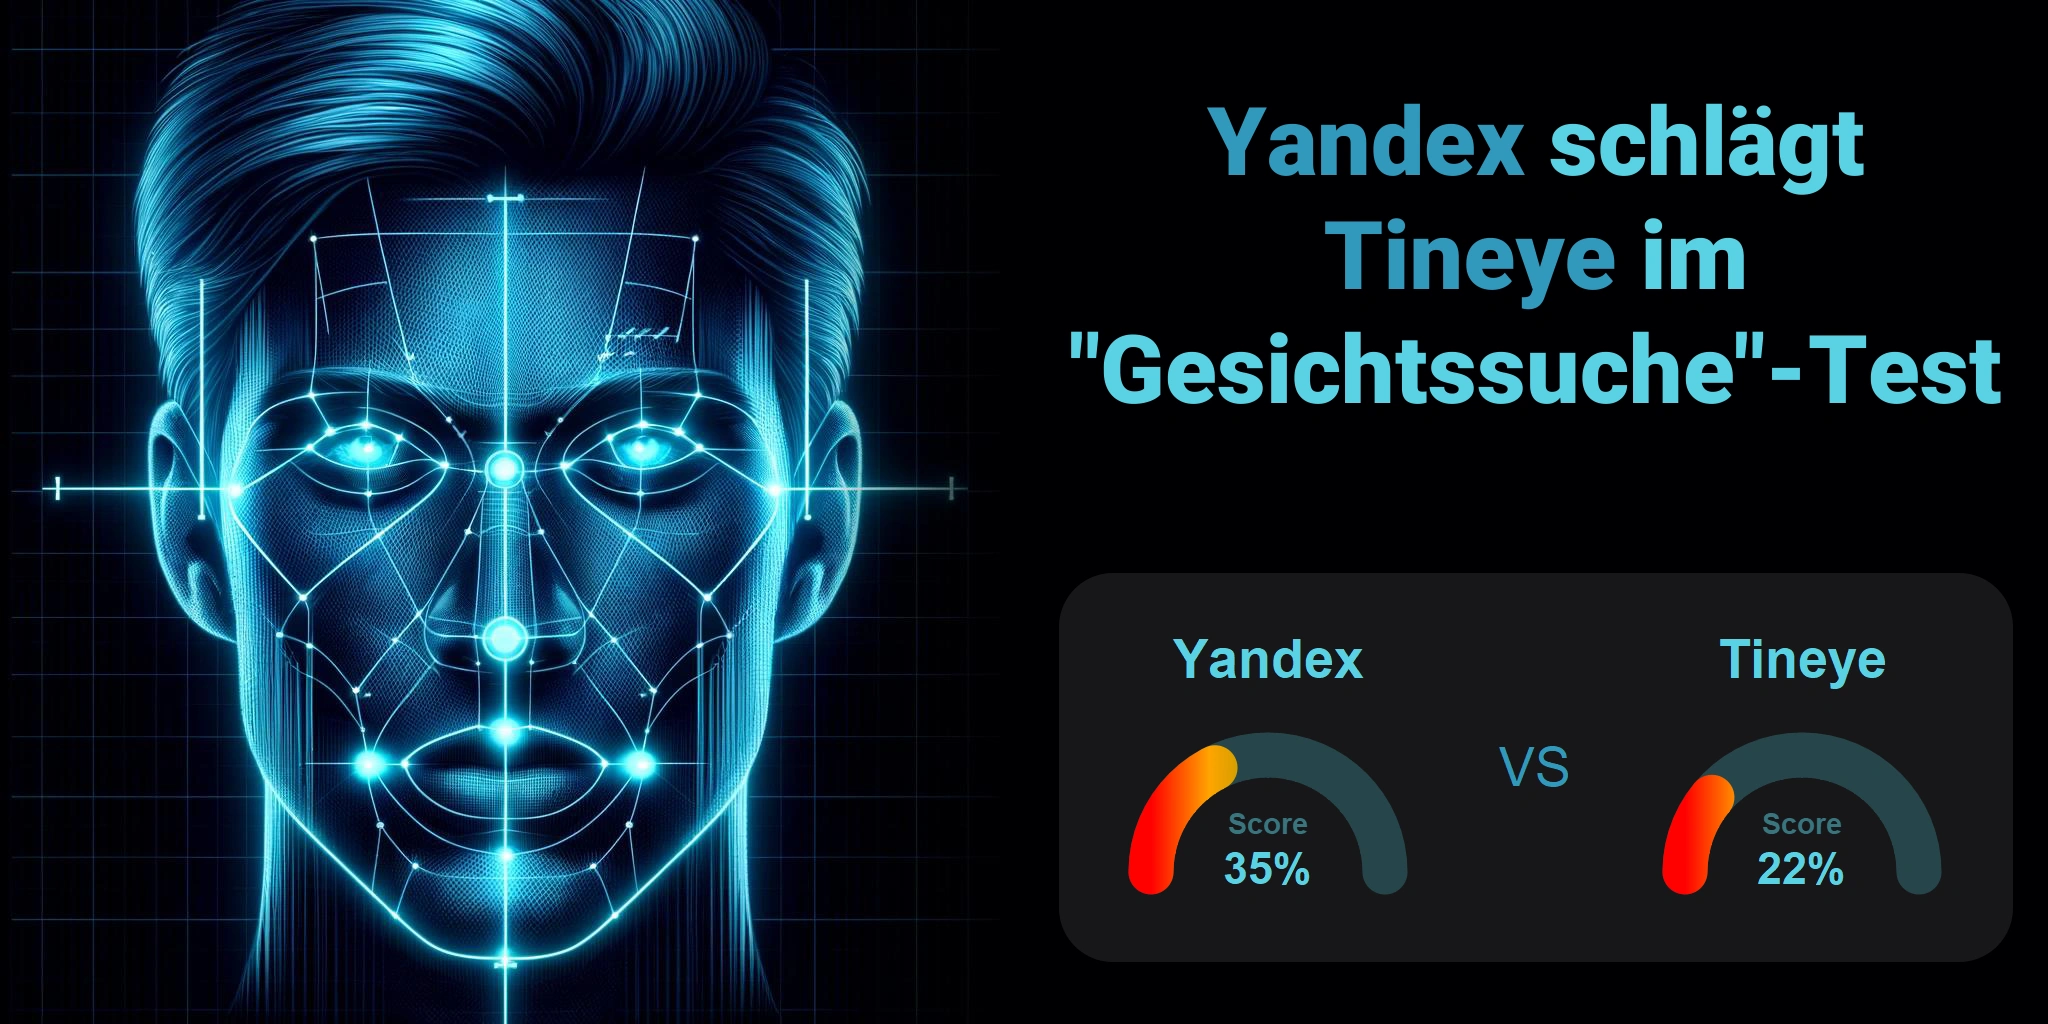 Welcher ist besser für die Gesichtssuche: <br>Tineye oder Yandex?